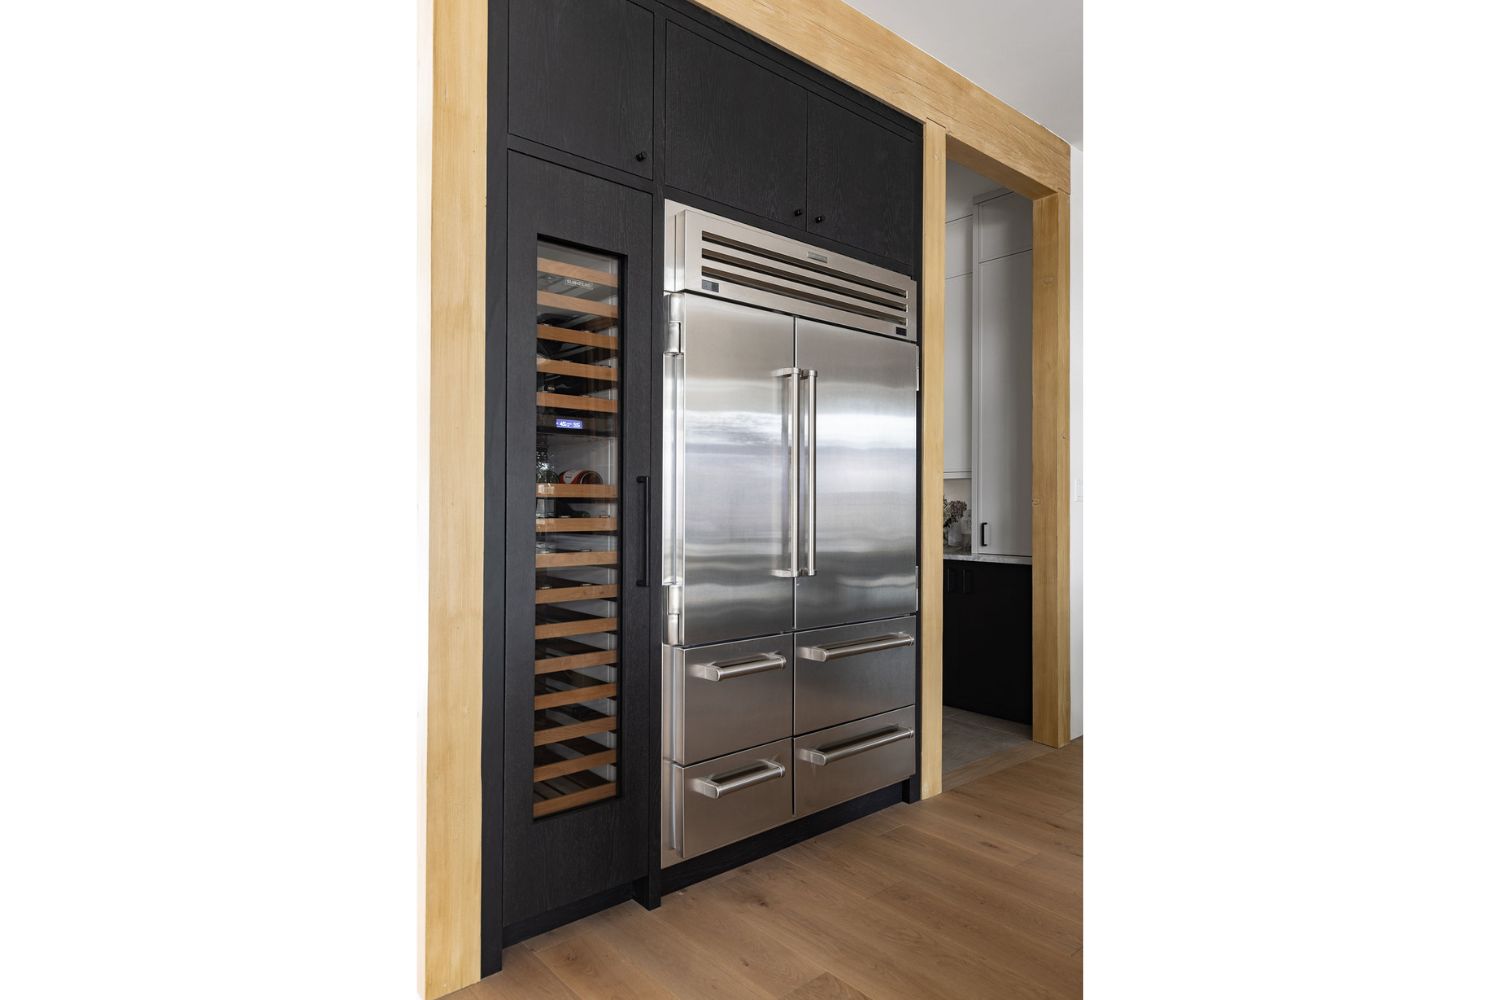 Project Fieldale: Stainless steel wide fridge